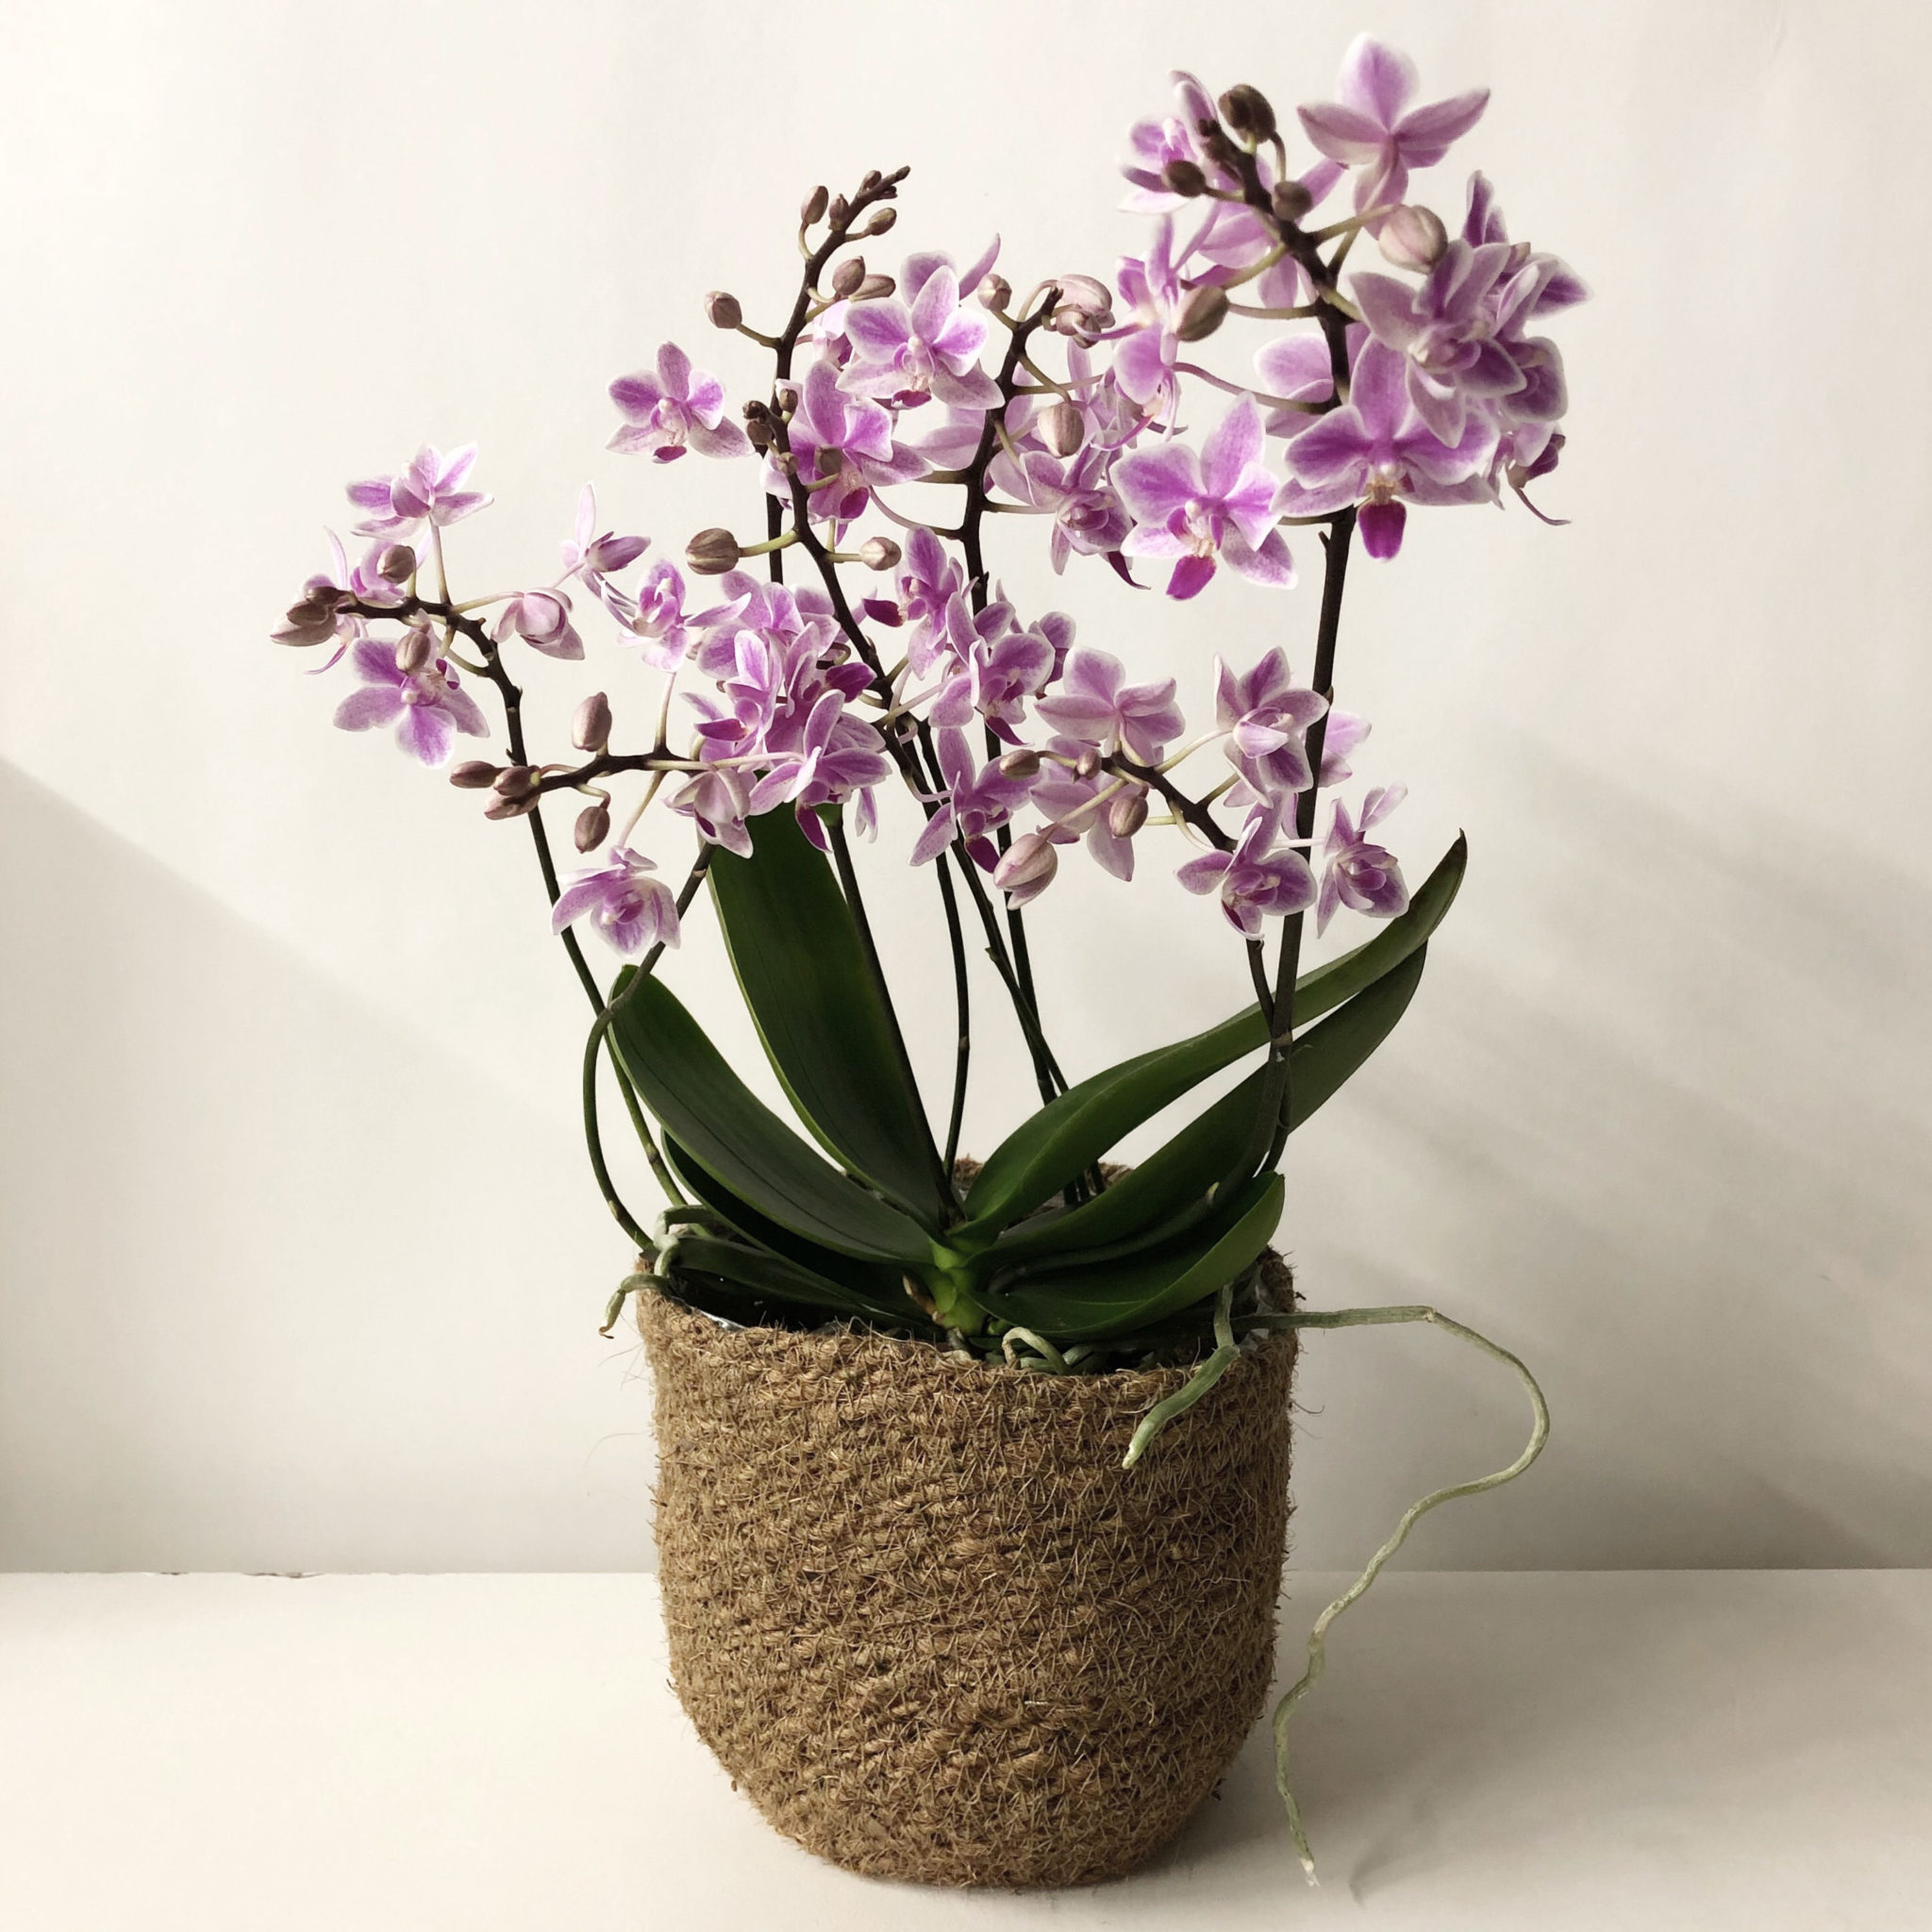 Orchidée violette, plante tropicale dotée d'une bonne résistance